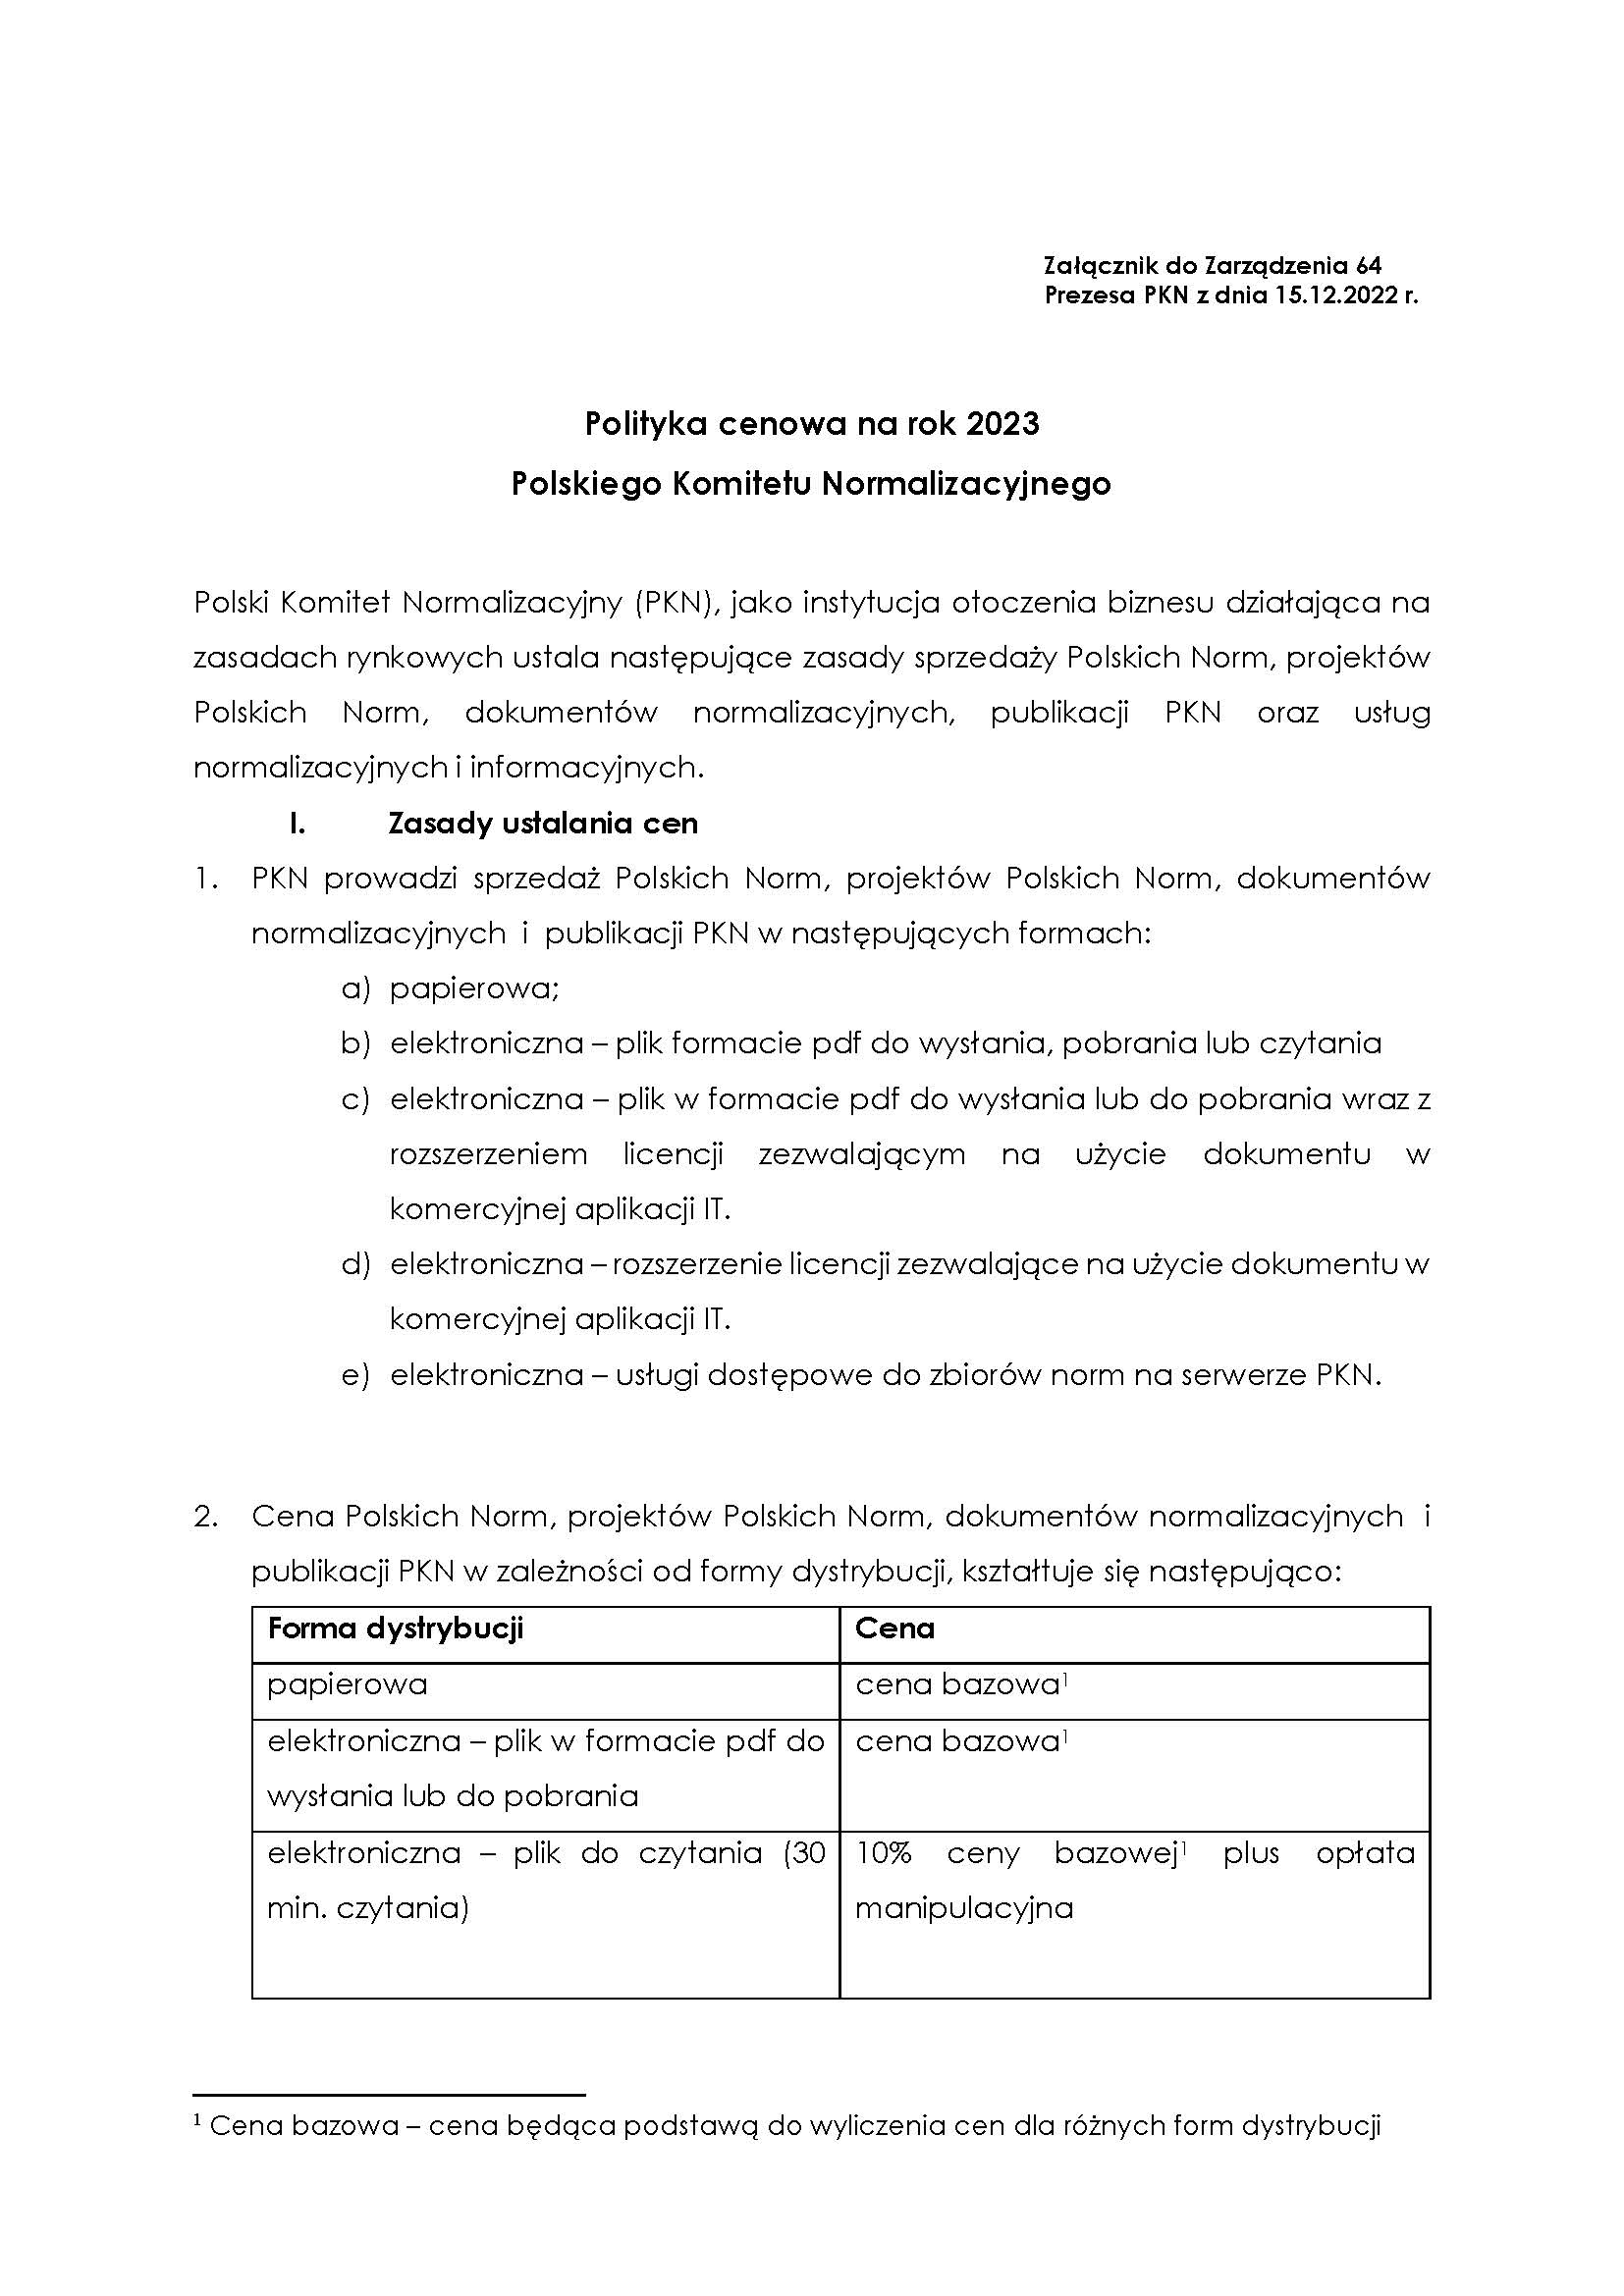 Print screen pierwszej strony dokumentu Polityka cenowa PKN 2023, otwierający całość tego dokumentu w formie PDF